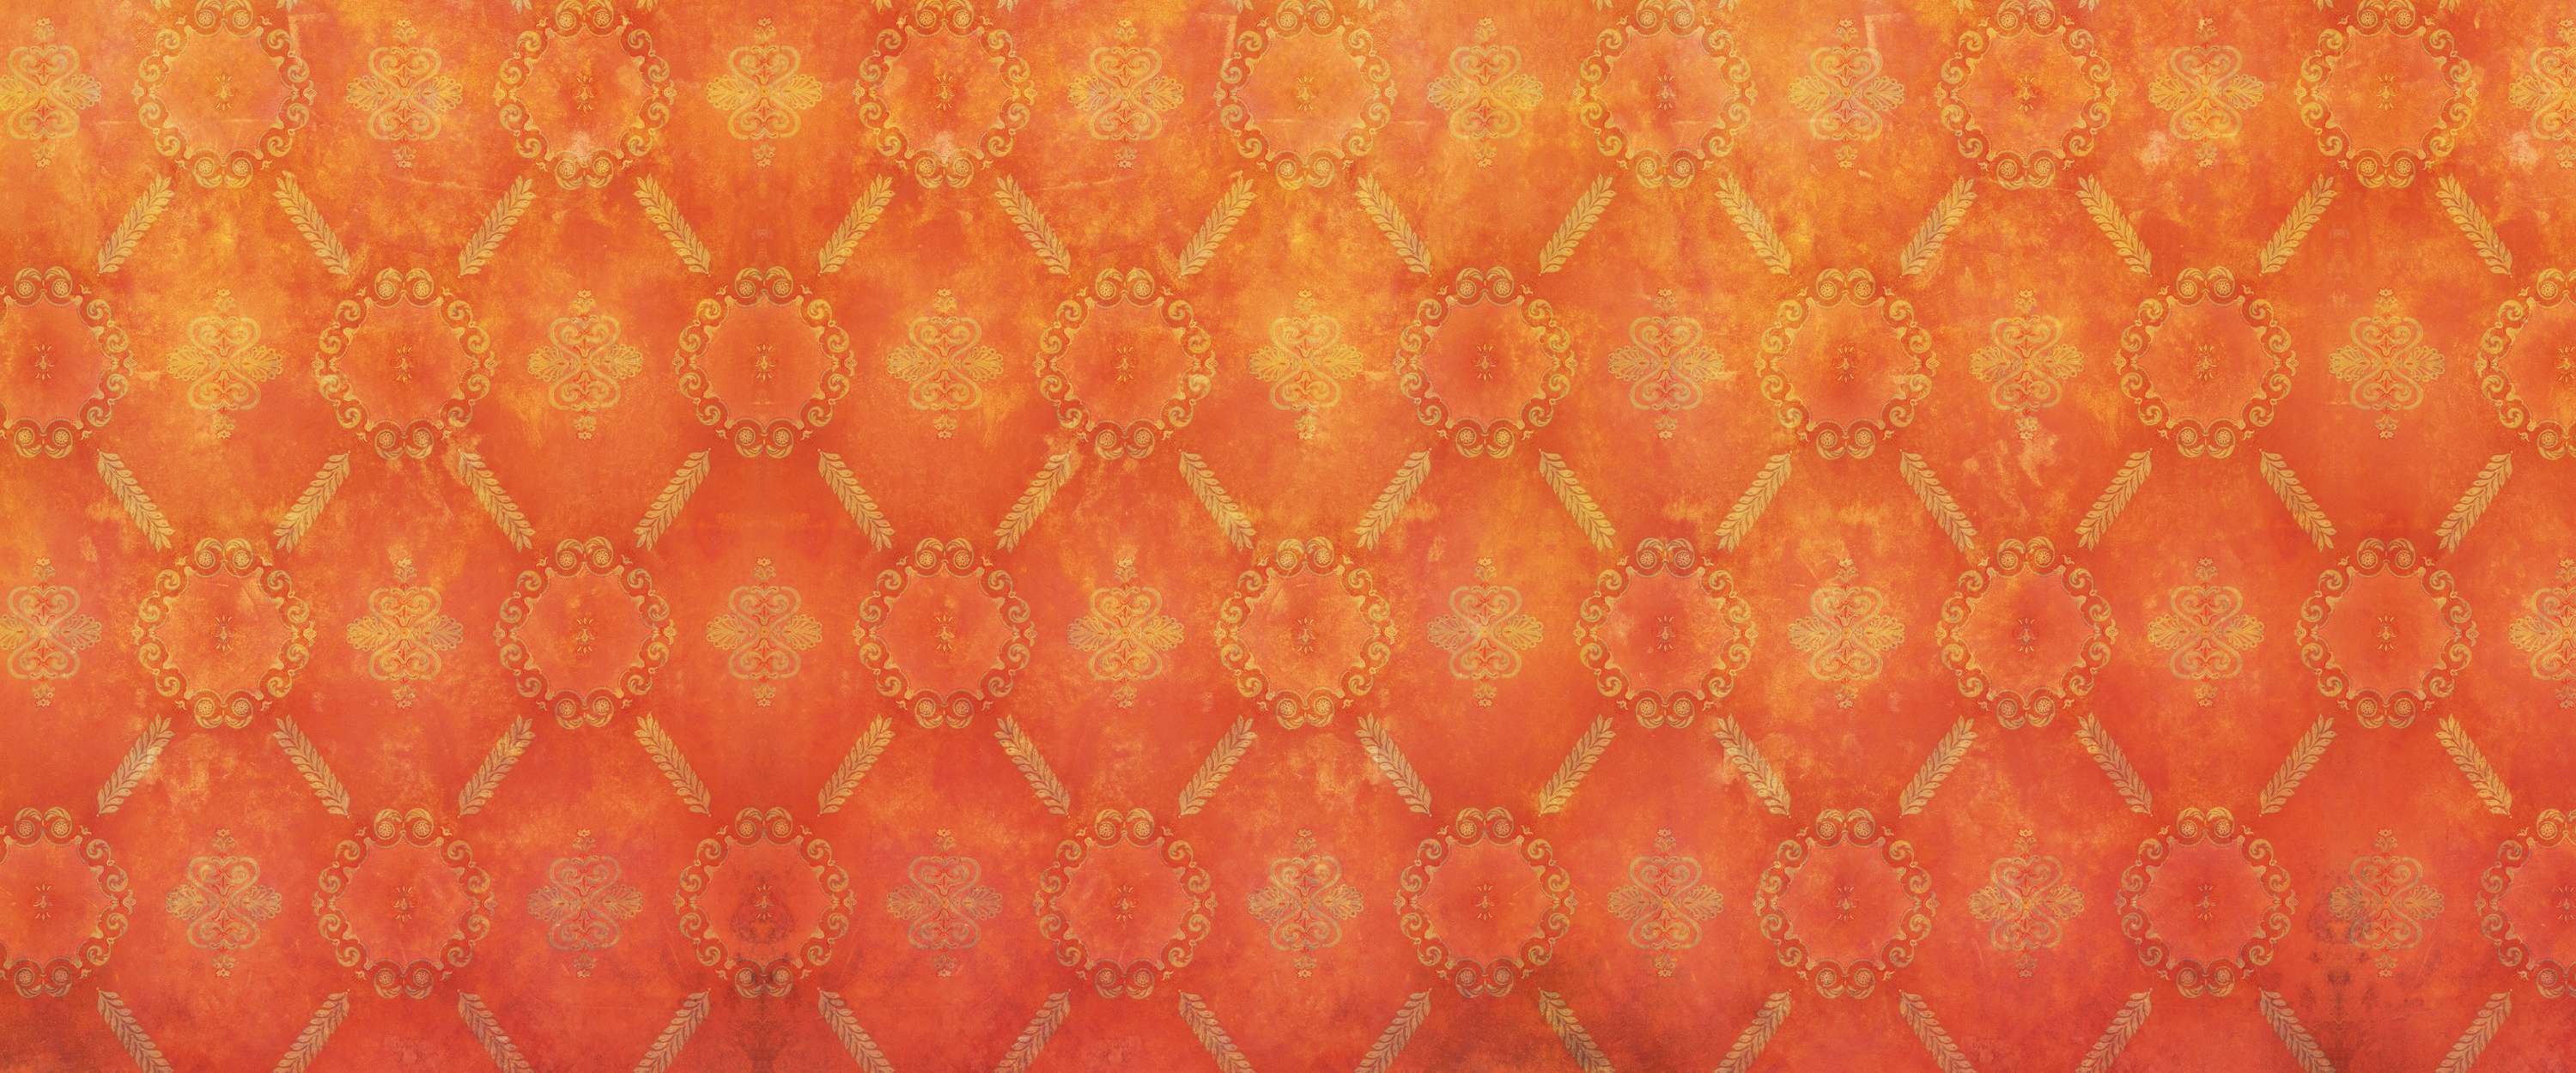             Papier peint orange avec motif ornemental et aspect usé
        